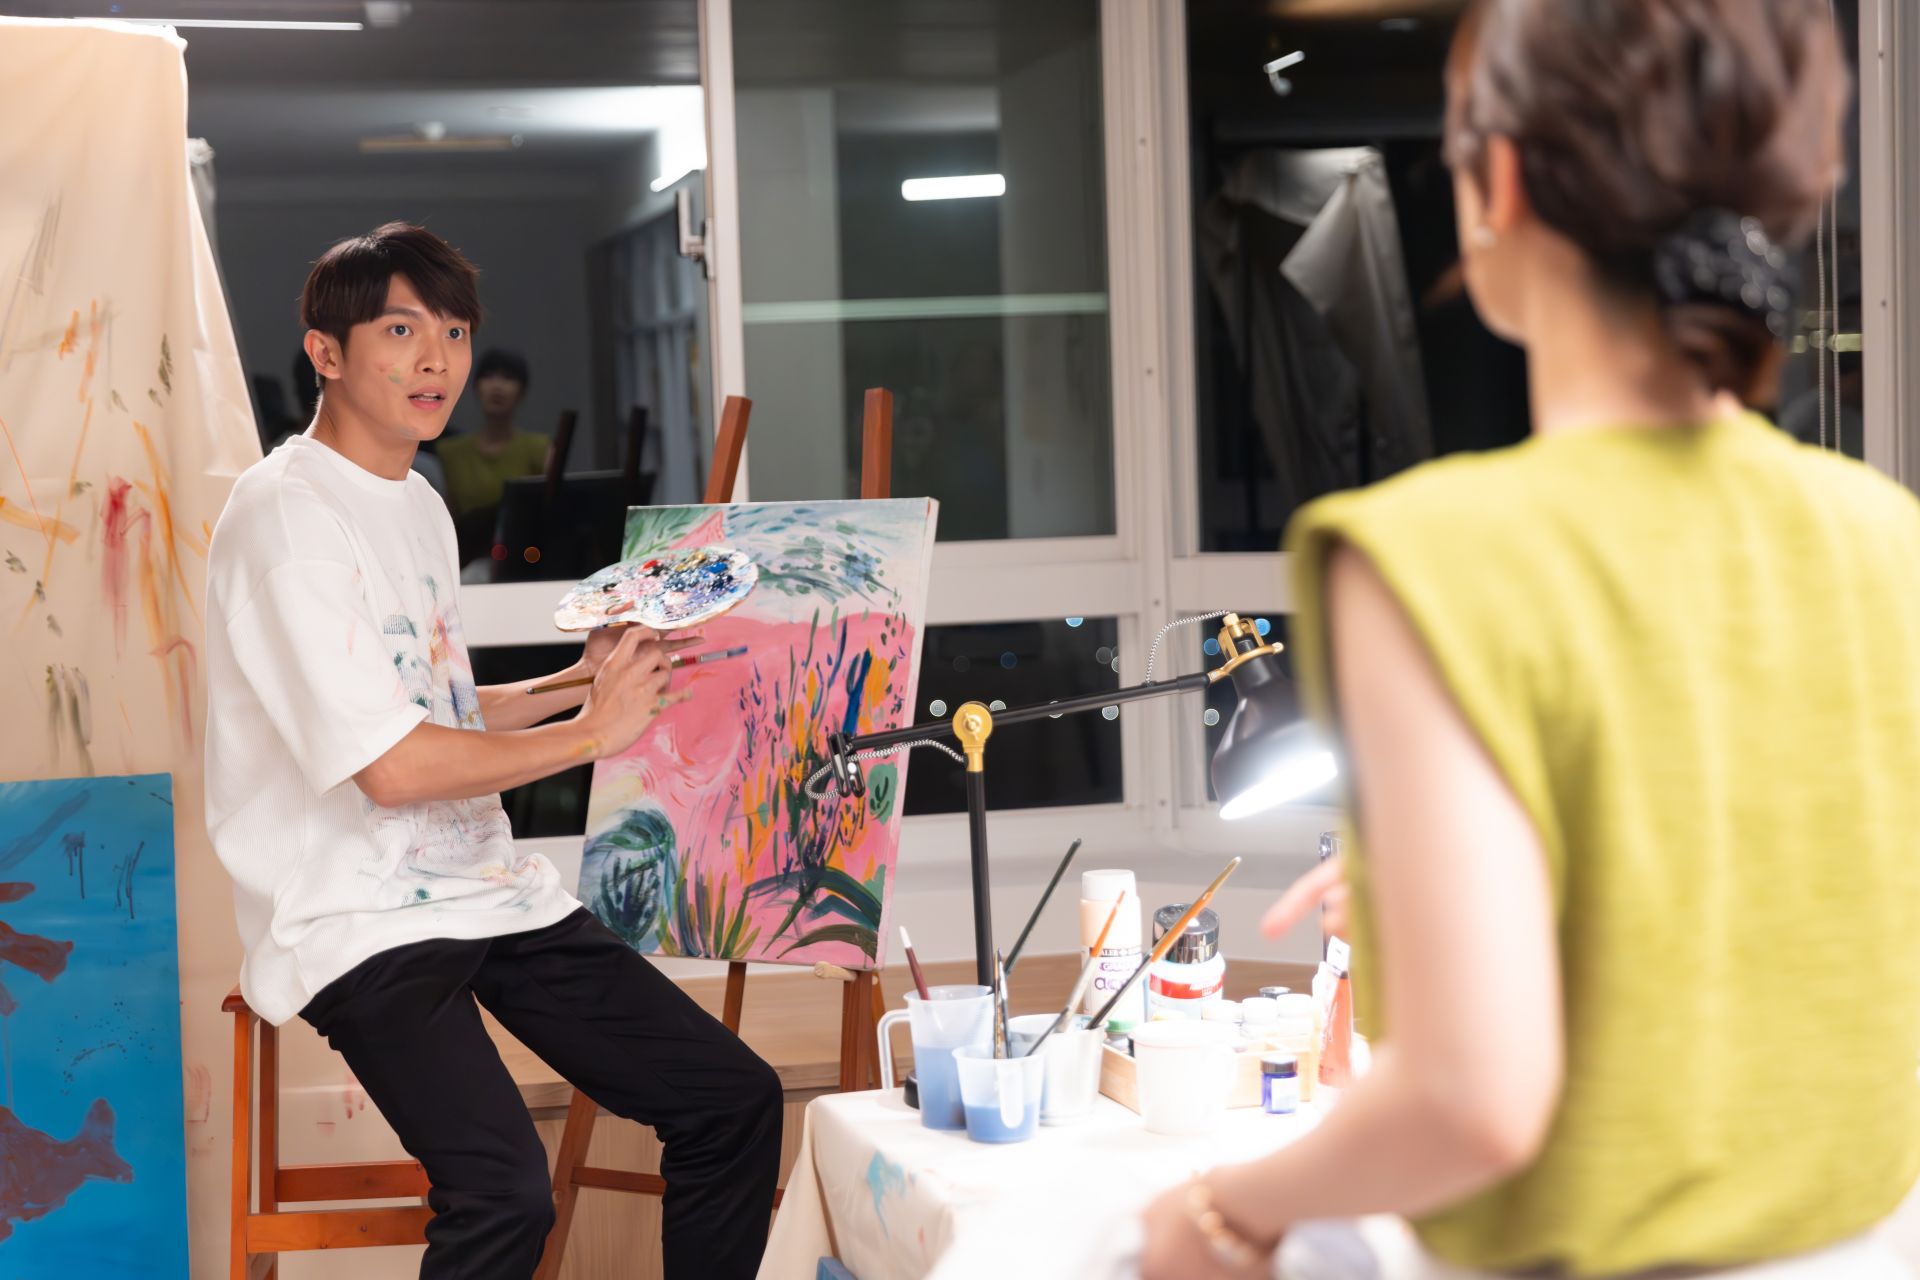 林輝瑝飾演朱芷瑩的兒子，喜歡藝術卻因為媽媽不斷壓抑